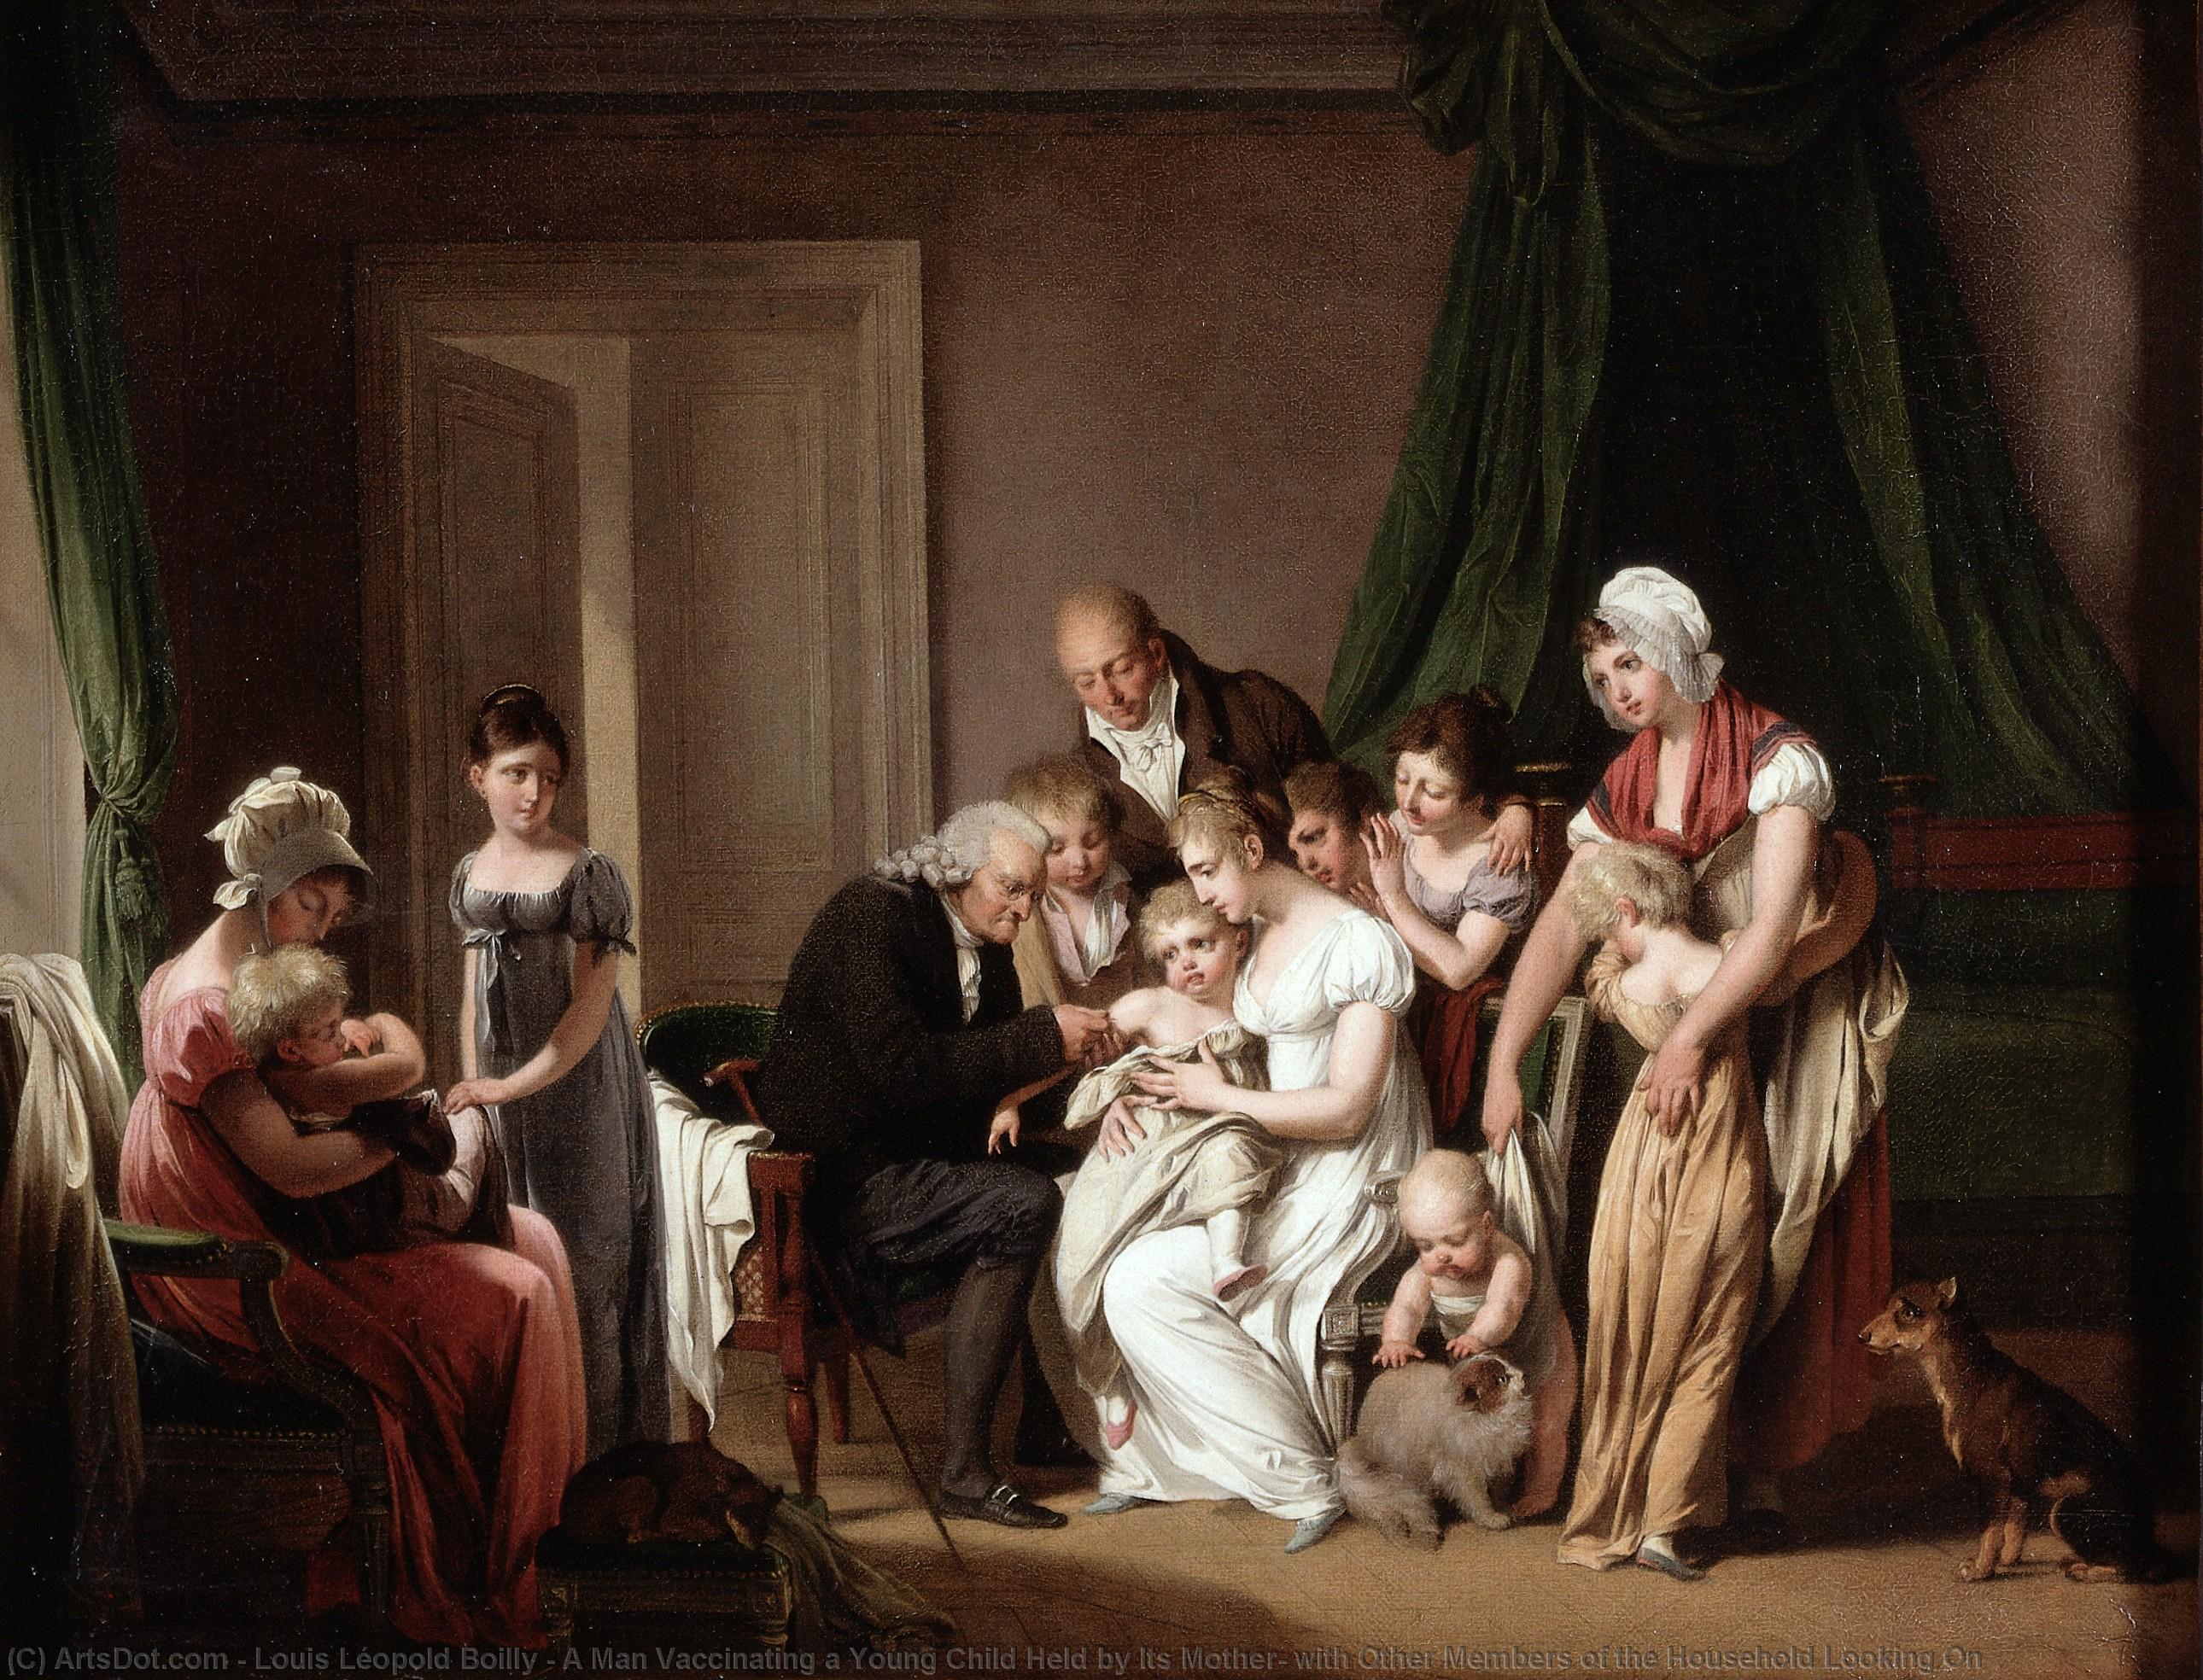 Acheter Reproductions D'art De Musée Un homme qui a vacciné un jeune enfant détenu par sa mère, avec d`autres membres du ménage qui regardent, 1807 de Louis Léopold Boilly (1761-1845, France) | ArtsDot.com